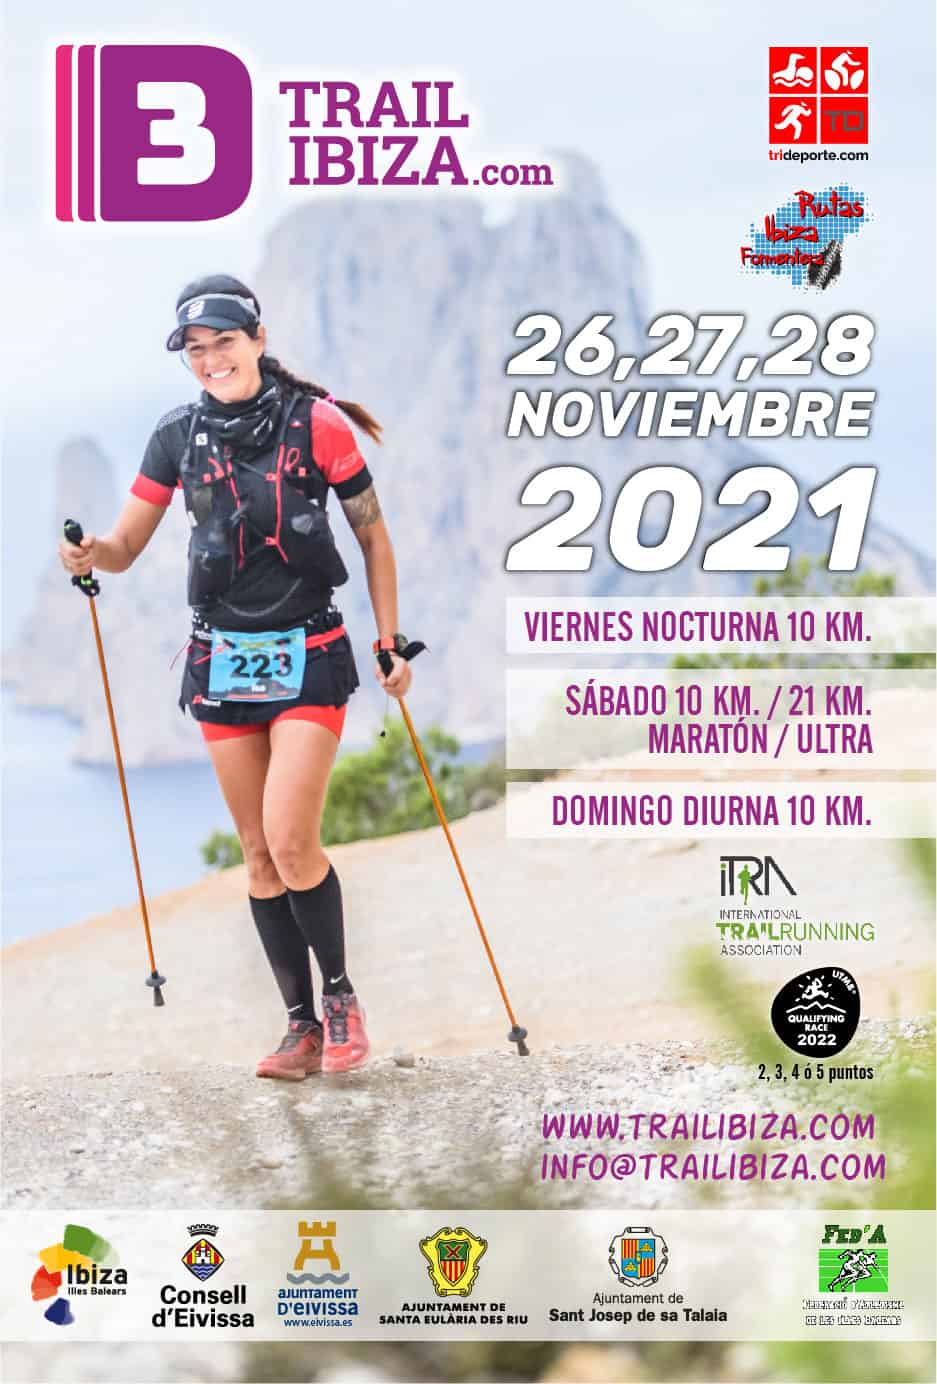 3-giorni-trail-ibiza-2021-welcometoibiza